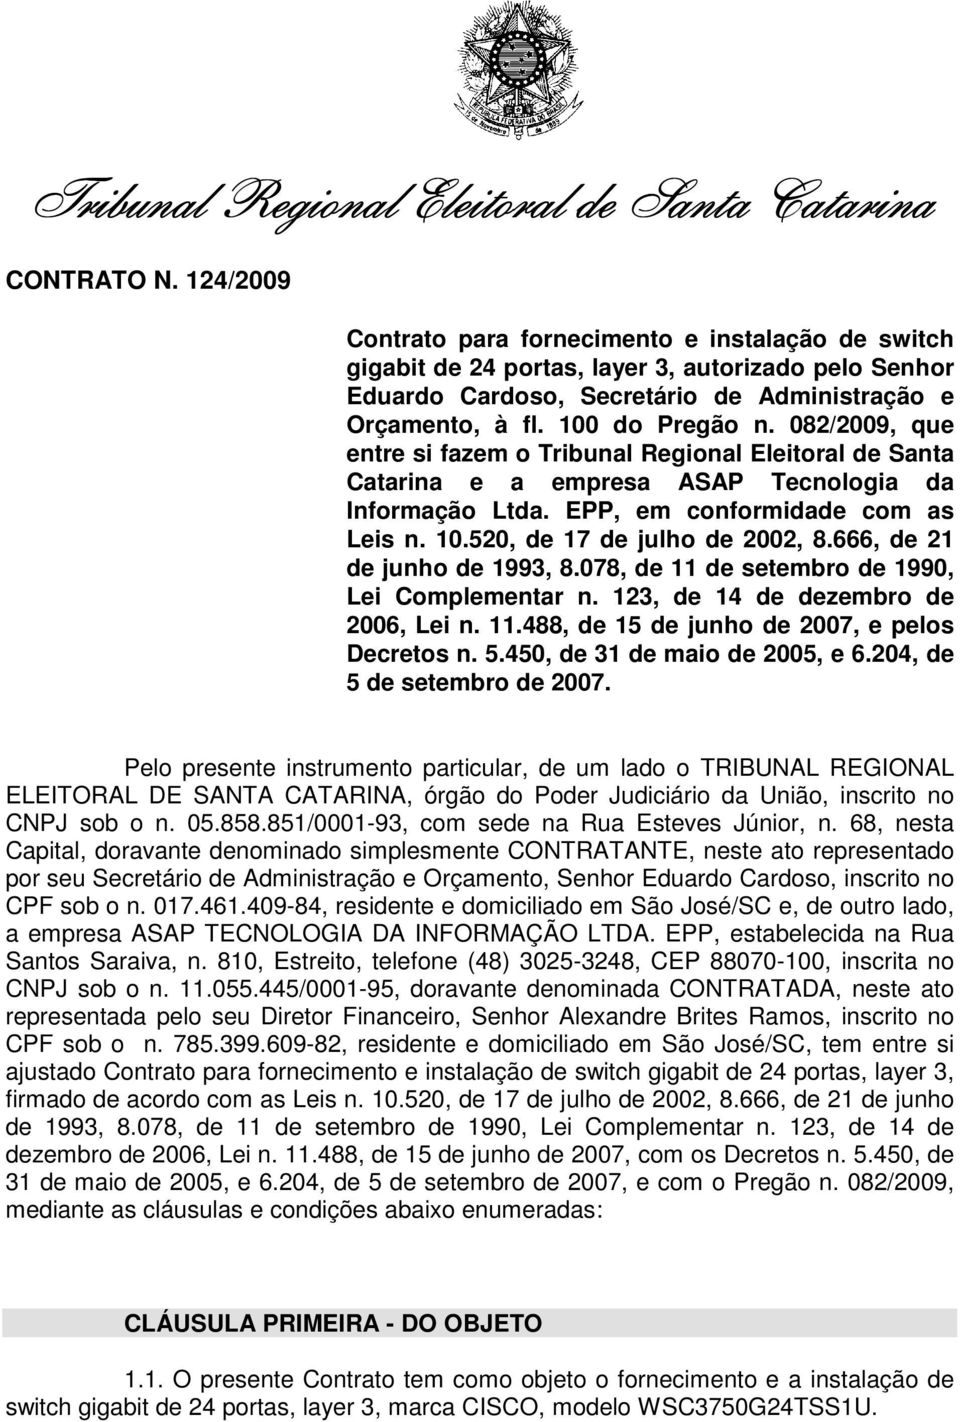 082/2009, que entre si fazem o Tribunal Regional Eleitoral de Santa Catarina e a empresa ASAP Tecnologia da Informação Ltda. EPP, em conformidade com as Leis n. 10.520, de 17 de julho de 2002, 8.